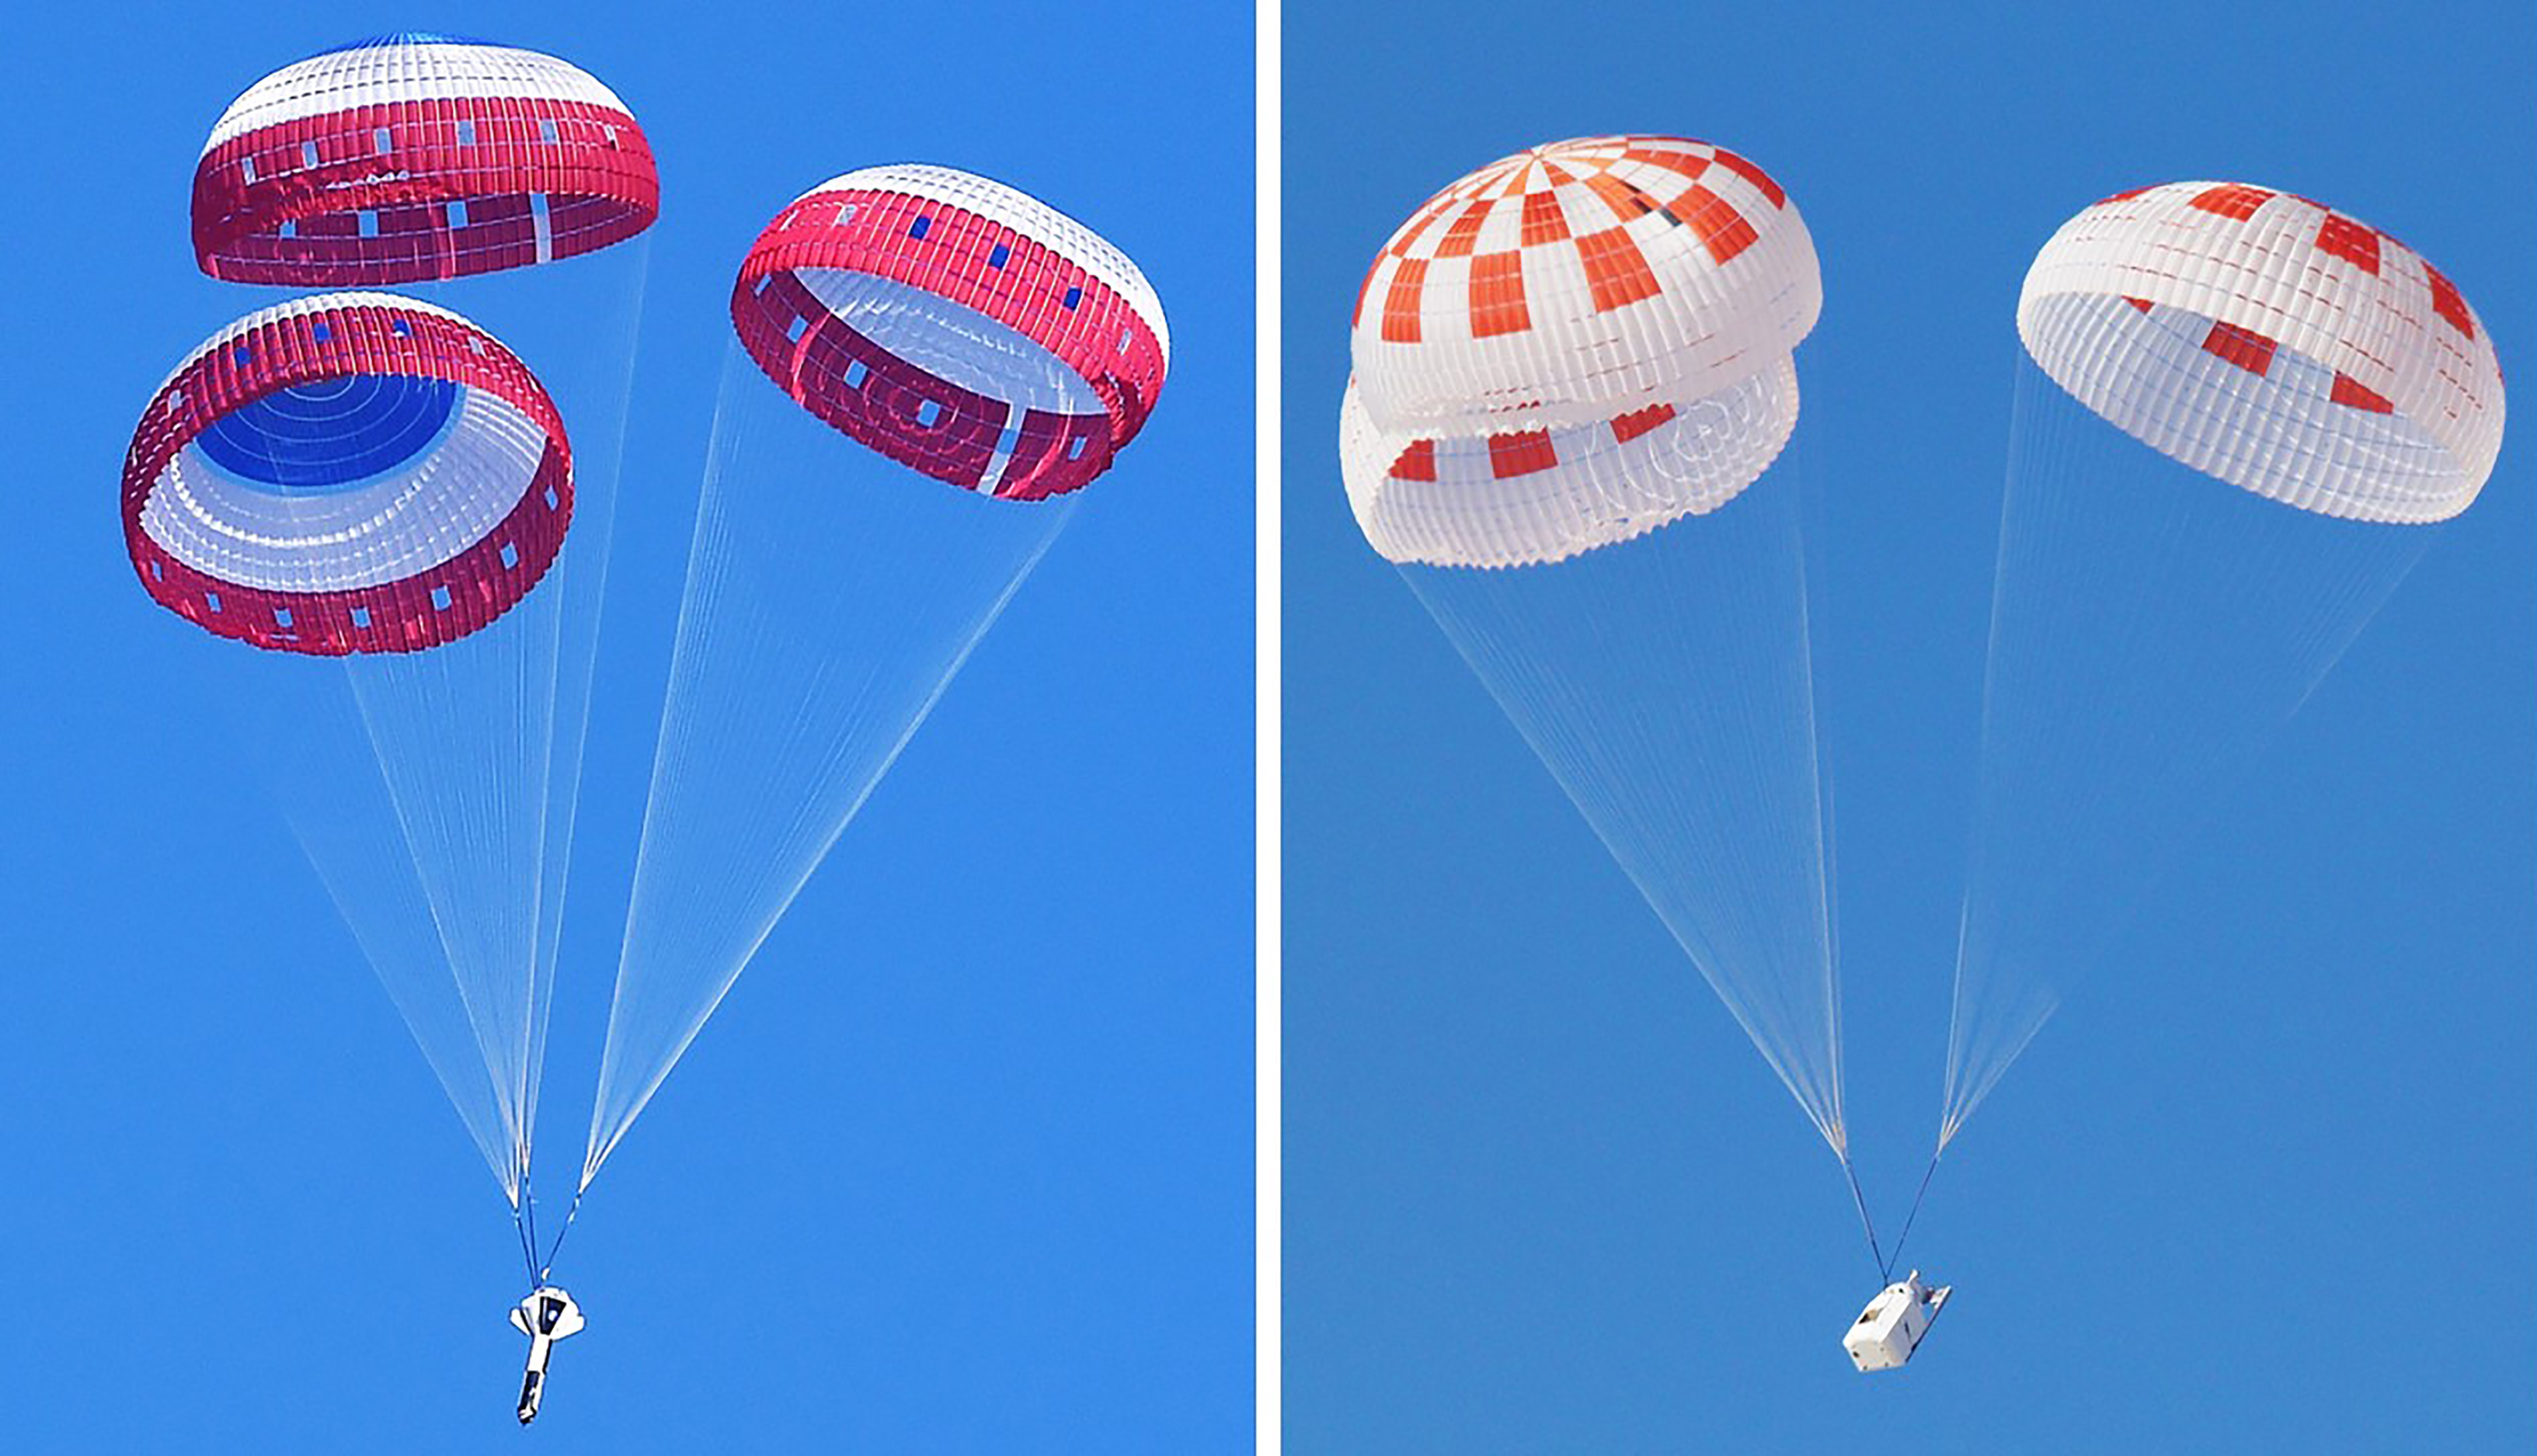 space shuttle parachute